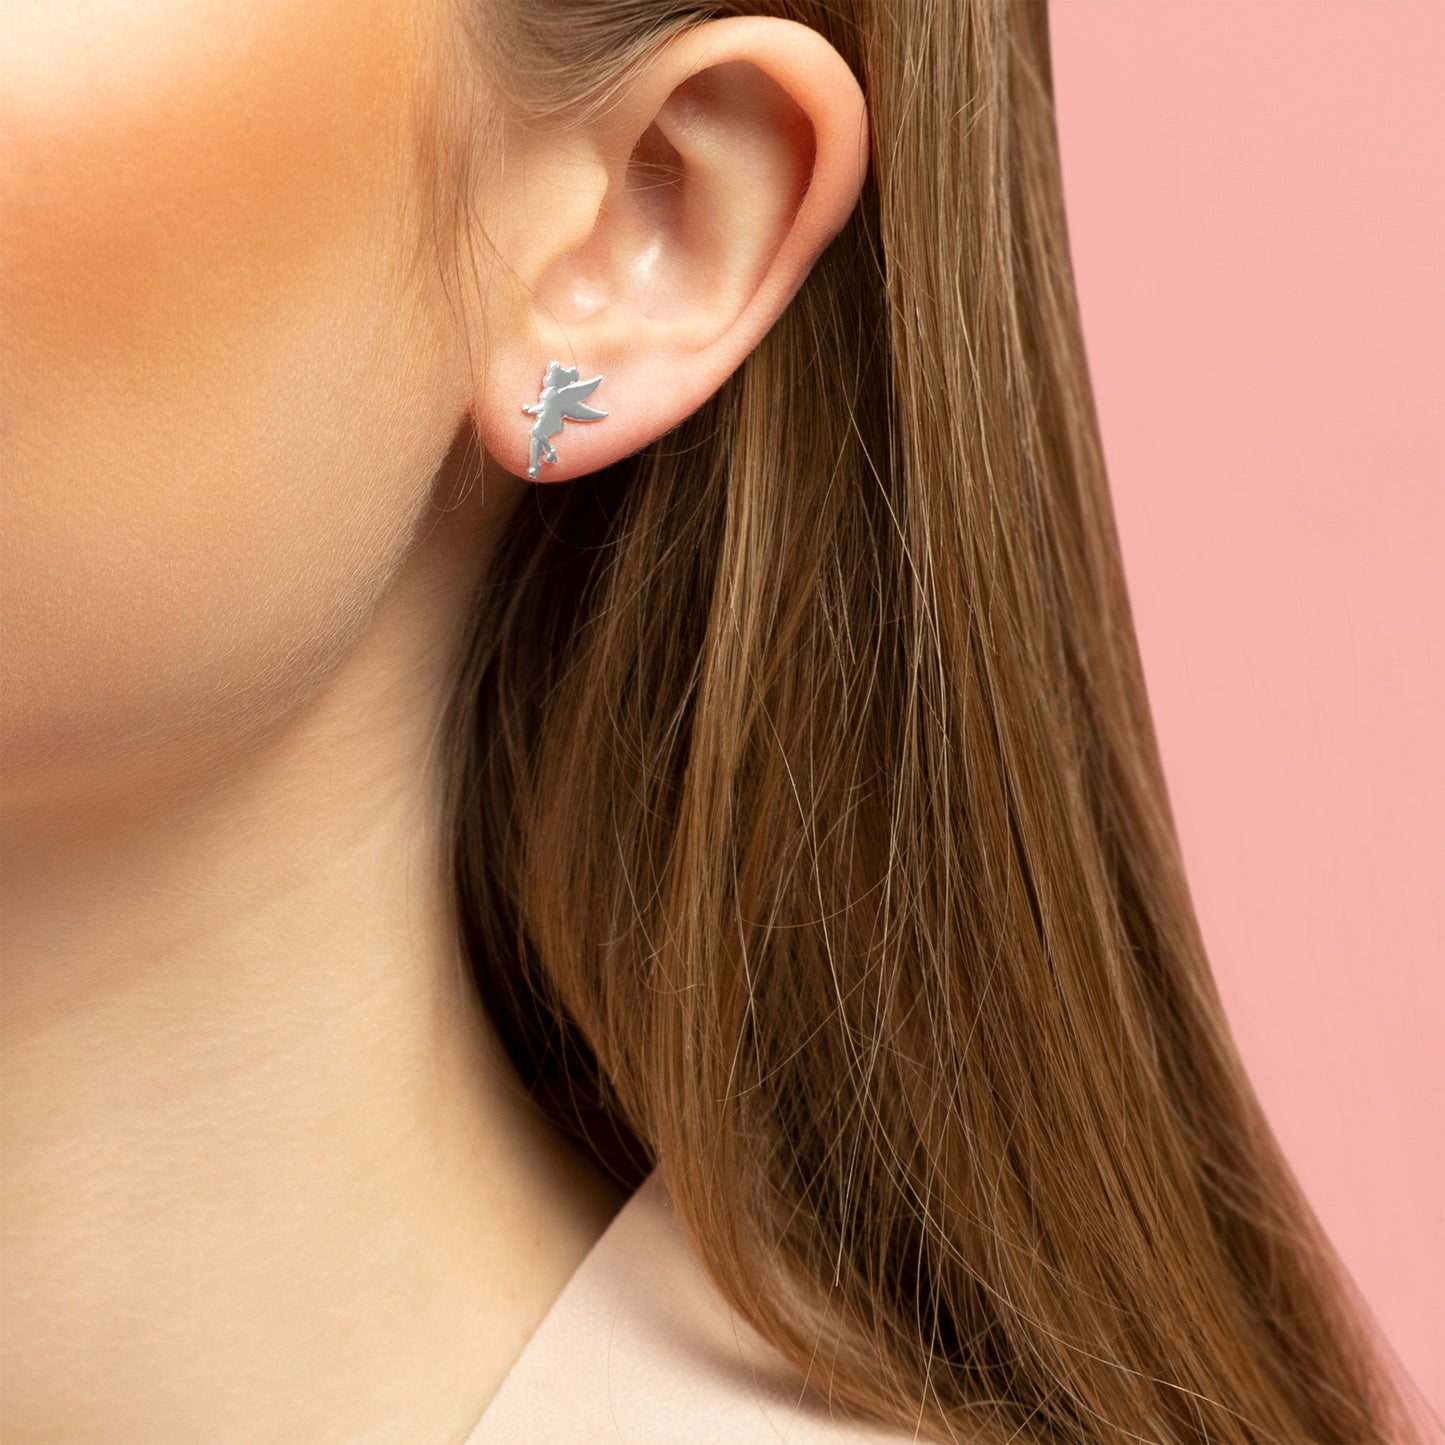 Disney Princess Tinkerbell Sterling Silver Stud Earrings